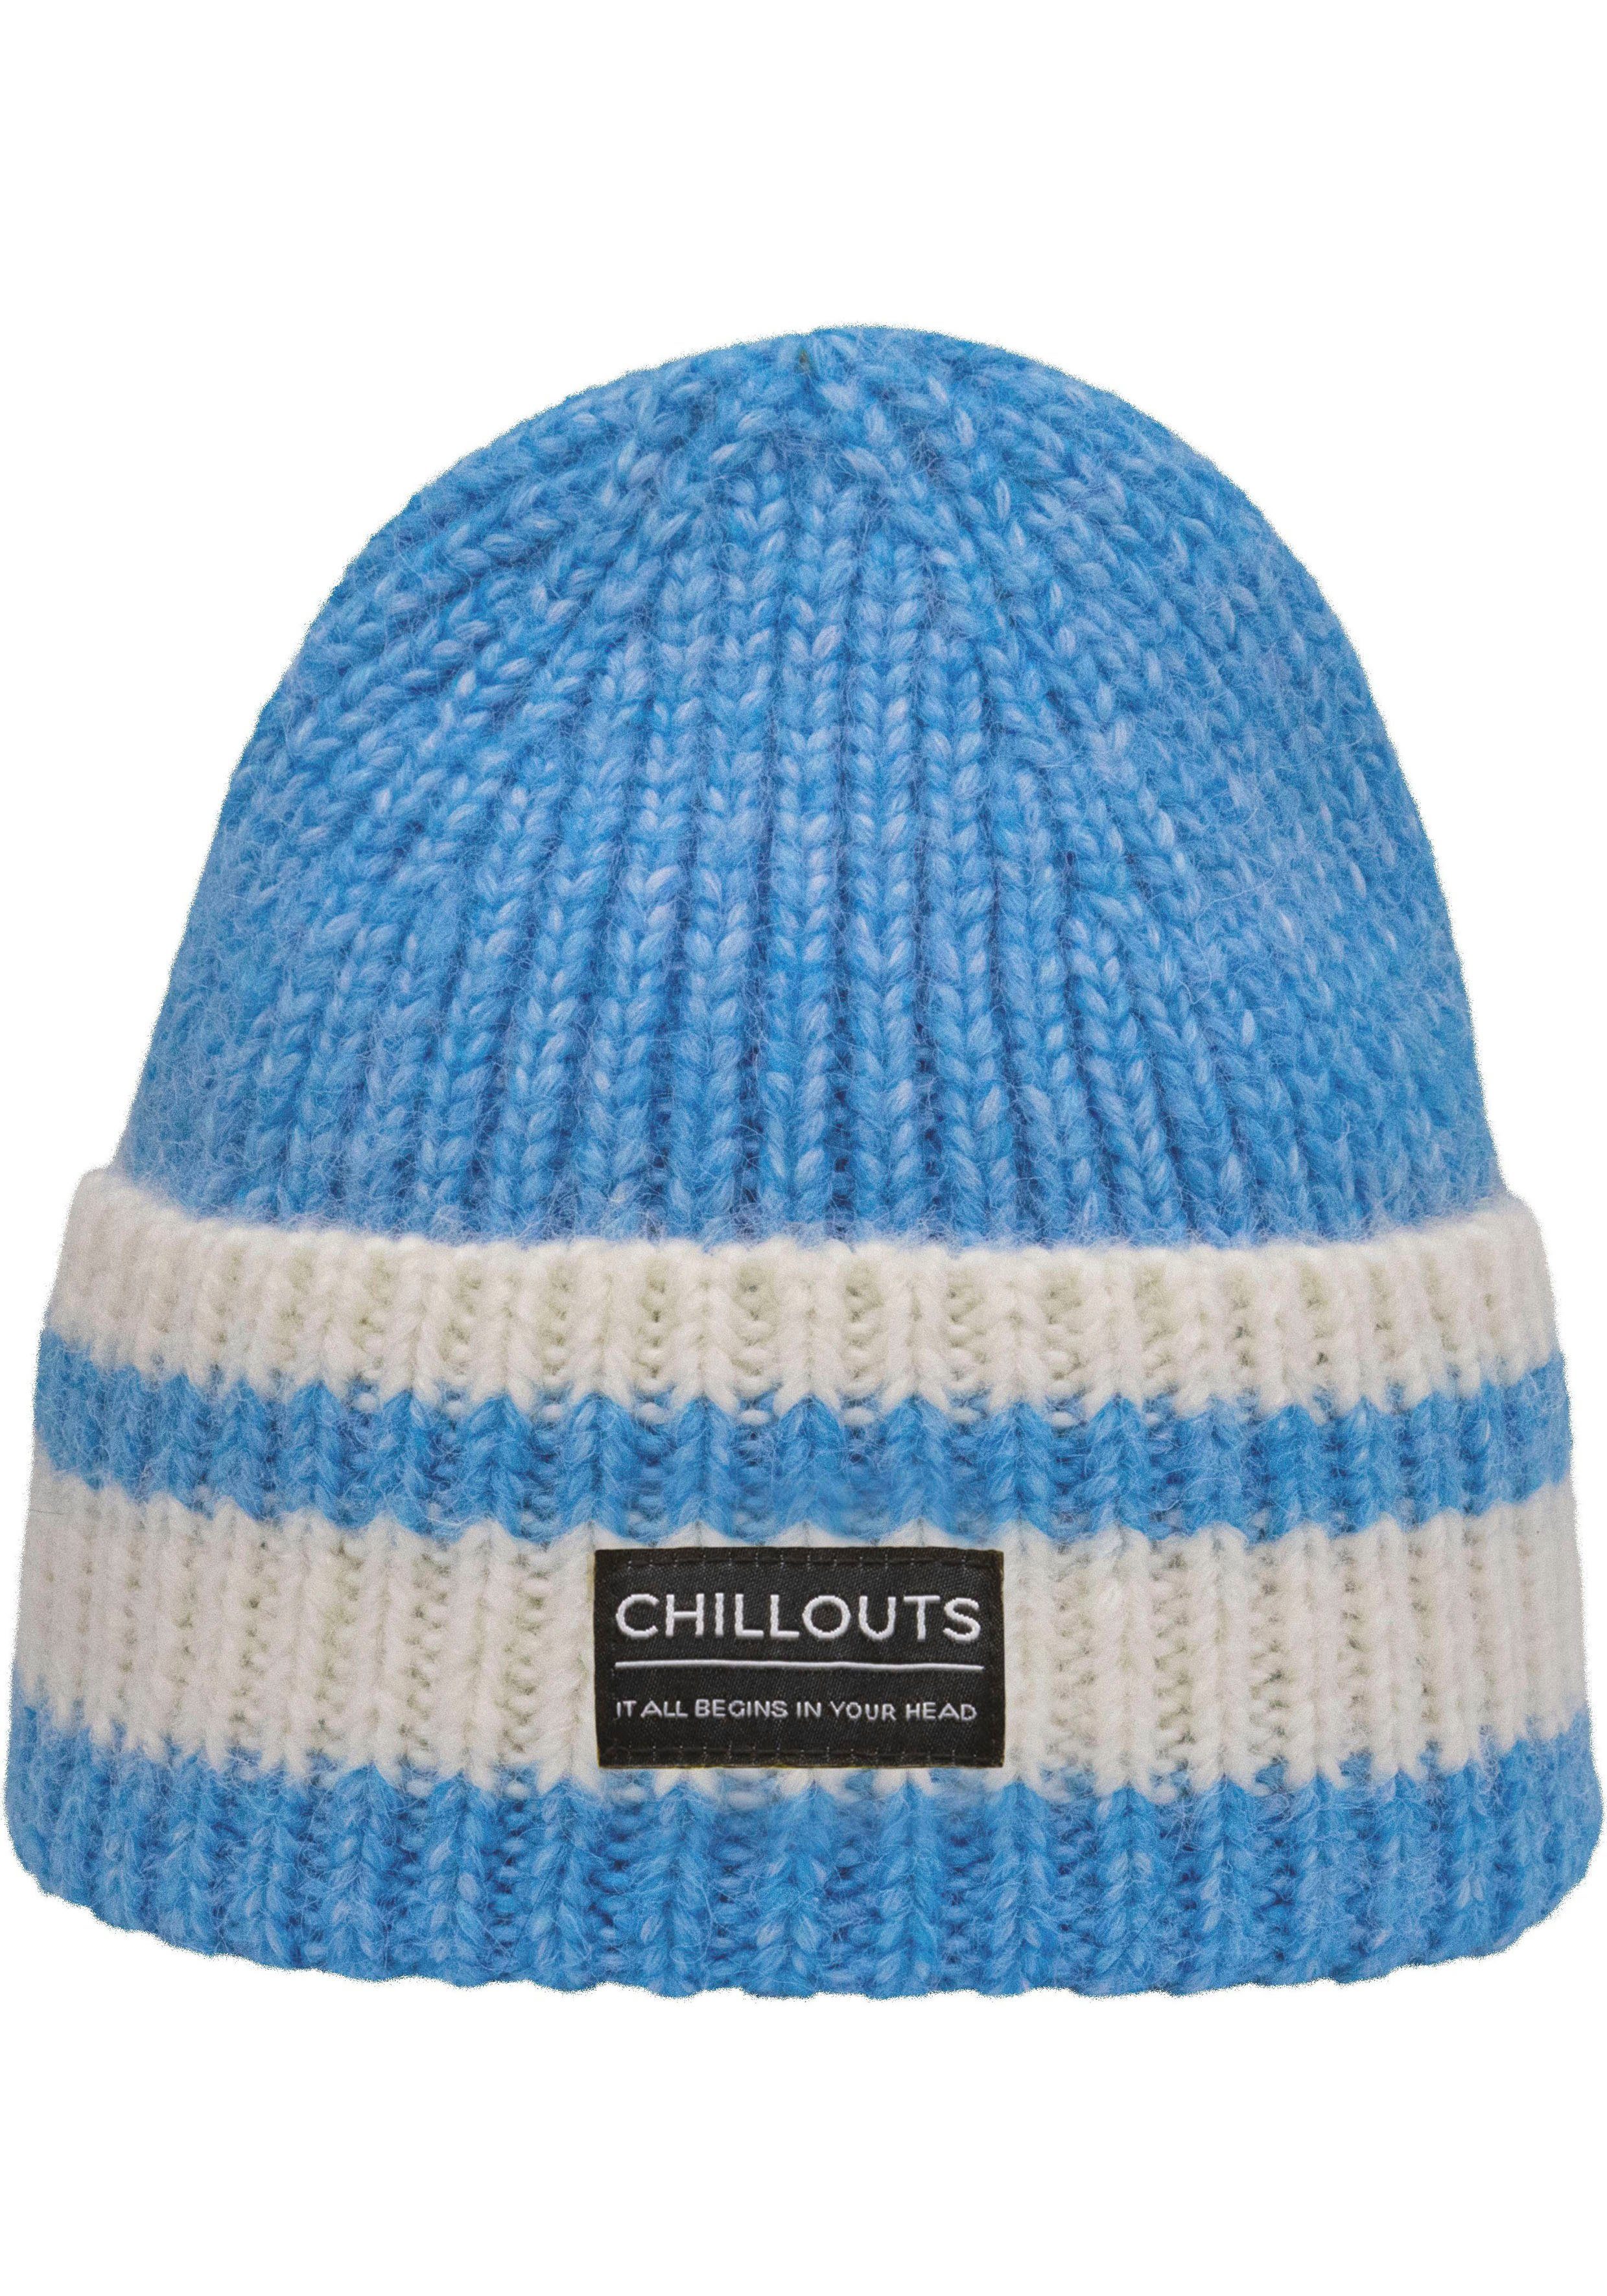 chillouts Strickmütze Cooper Hat mit Kontrast-Streifen blue-white